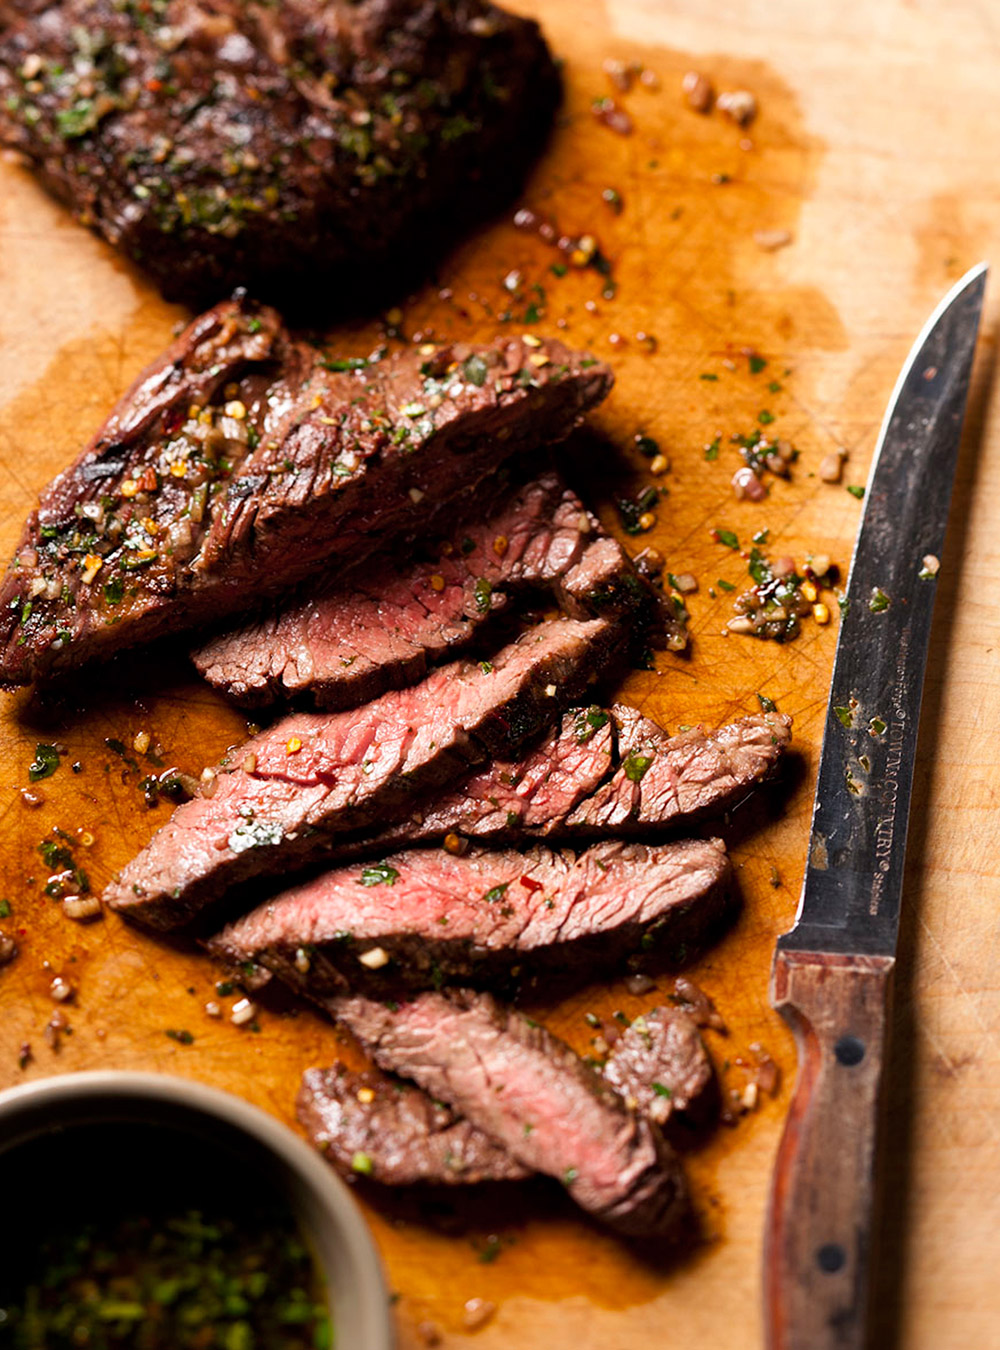 Recette de boeuf: tout sur les rôtis ou les steaks de boeuf  page 3 ...